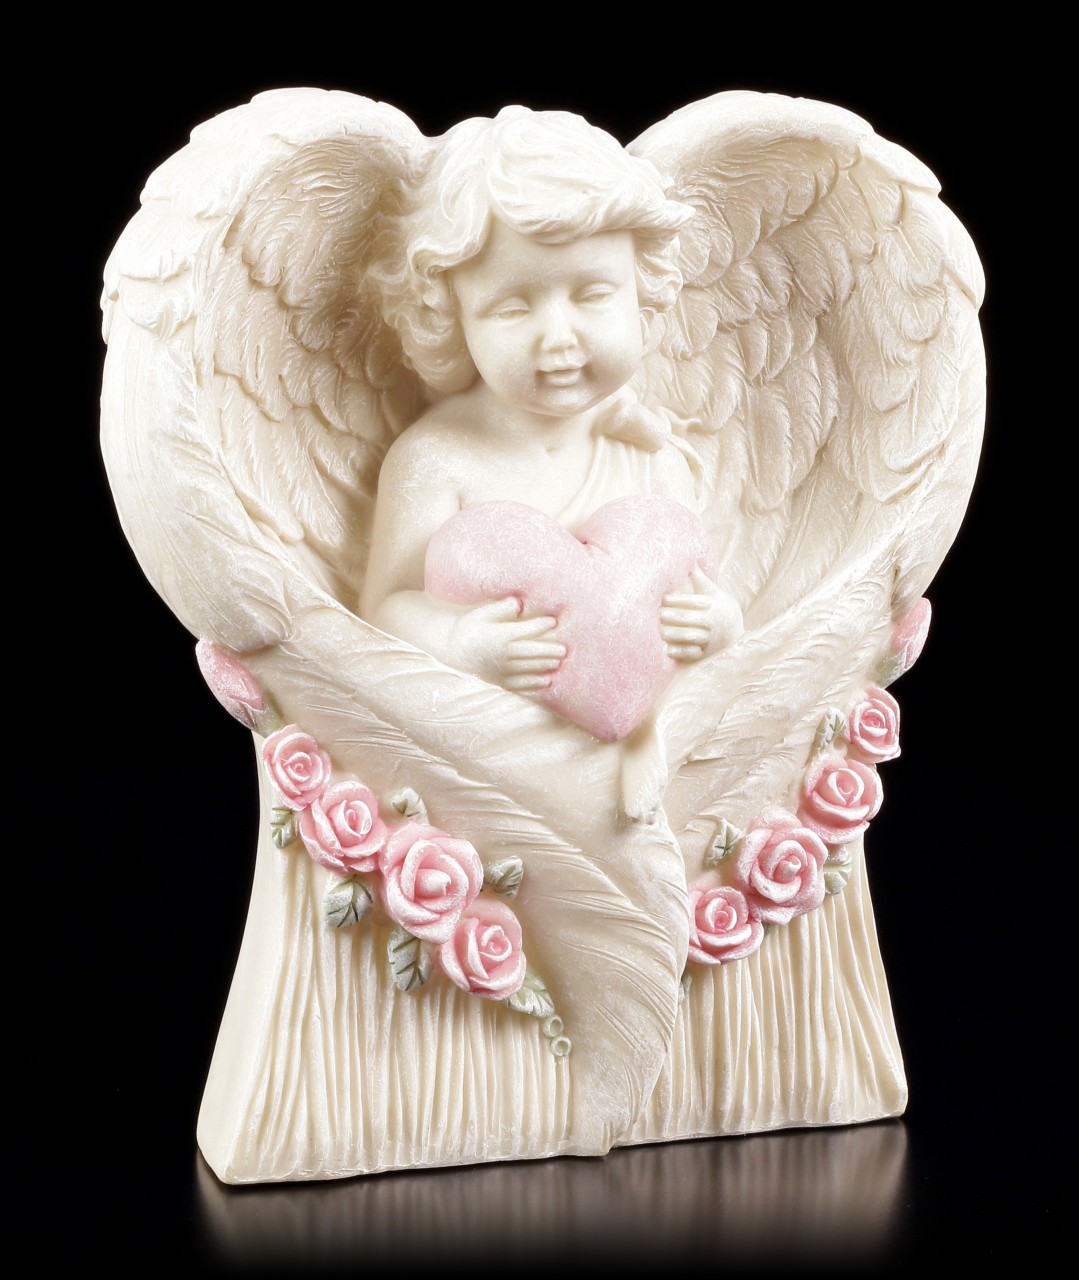 Angel Garden Figurine - Little Cherub with Heart